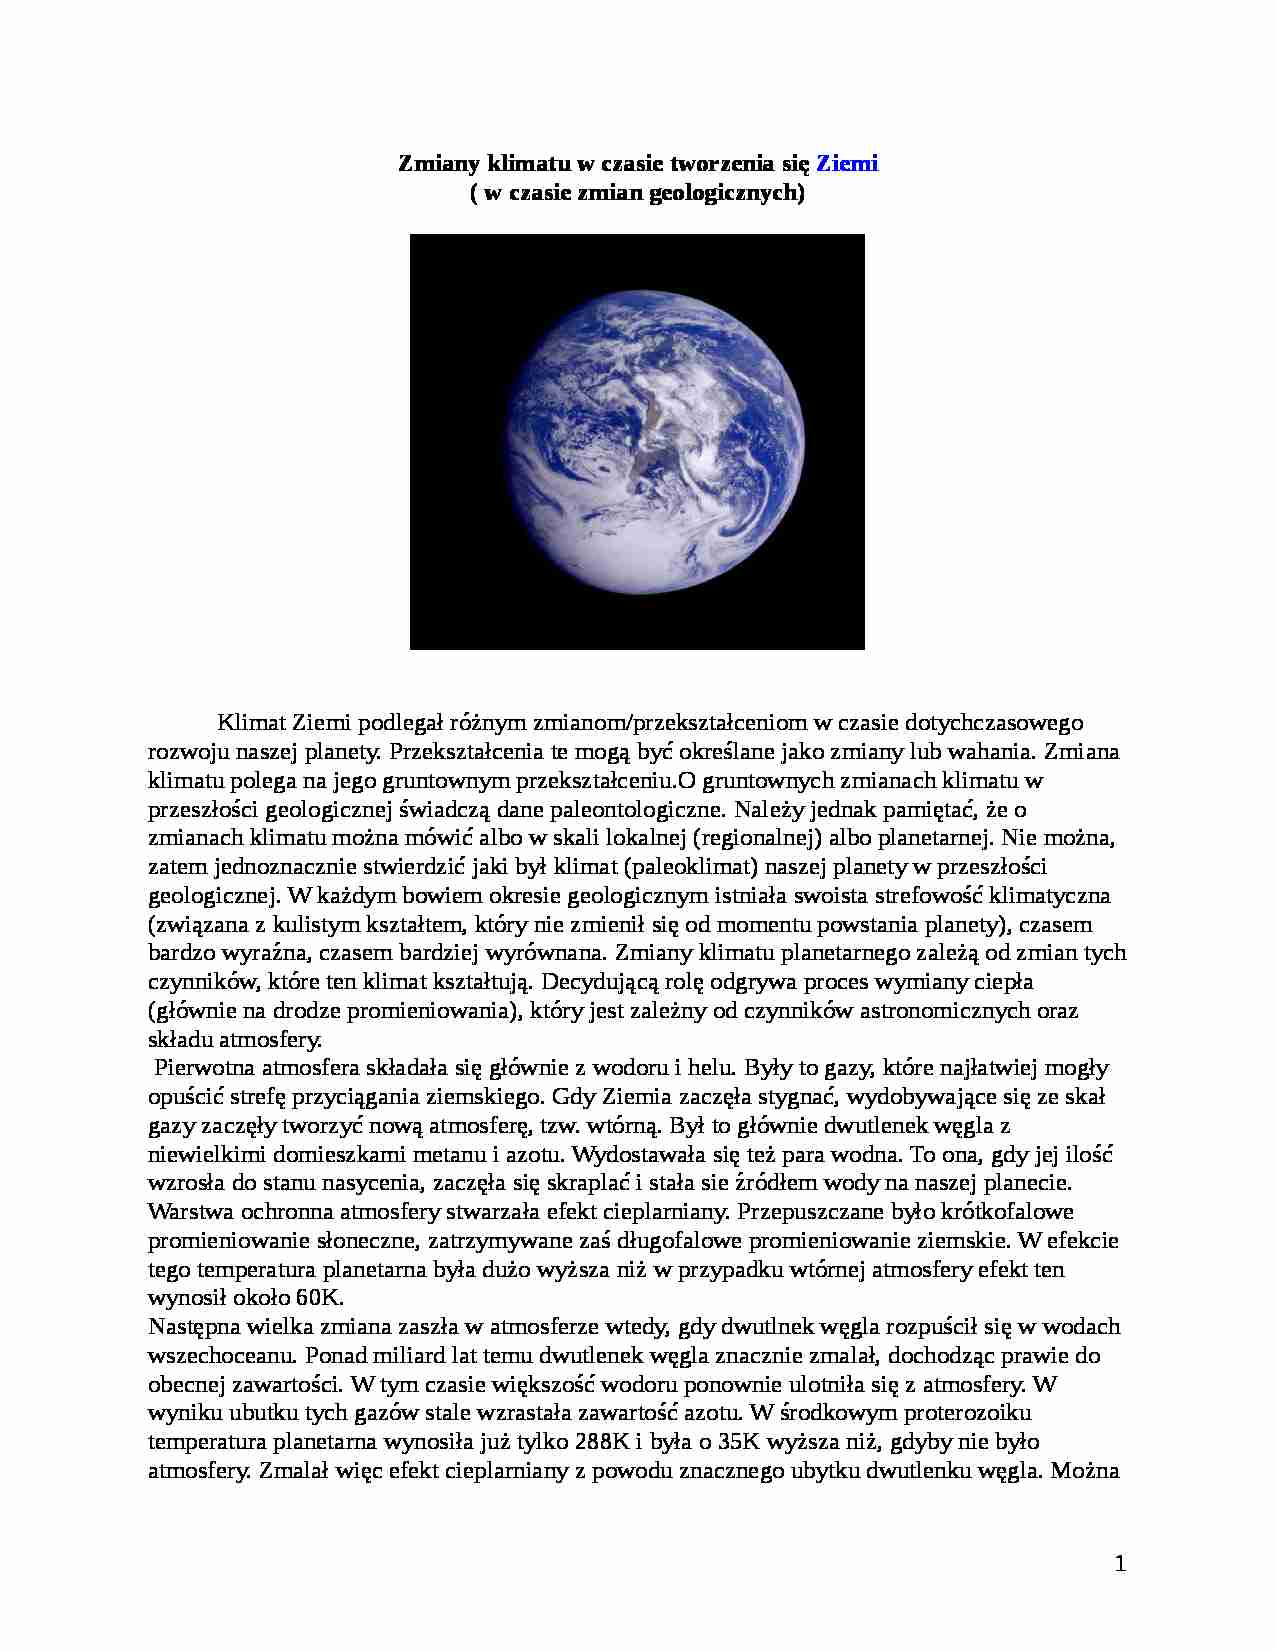 Referat: Zmiany klimatu w czasie tworzenia się Ziemi - strona 1